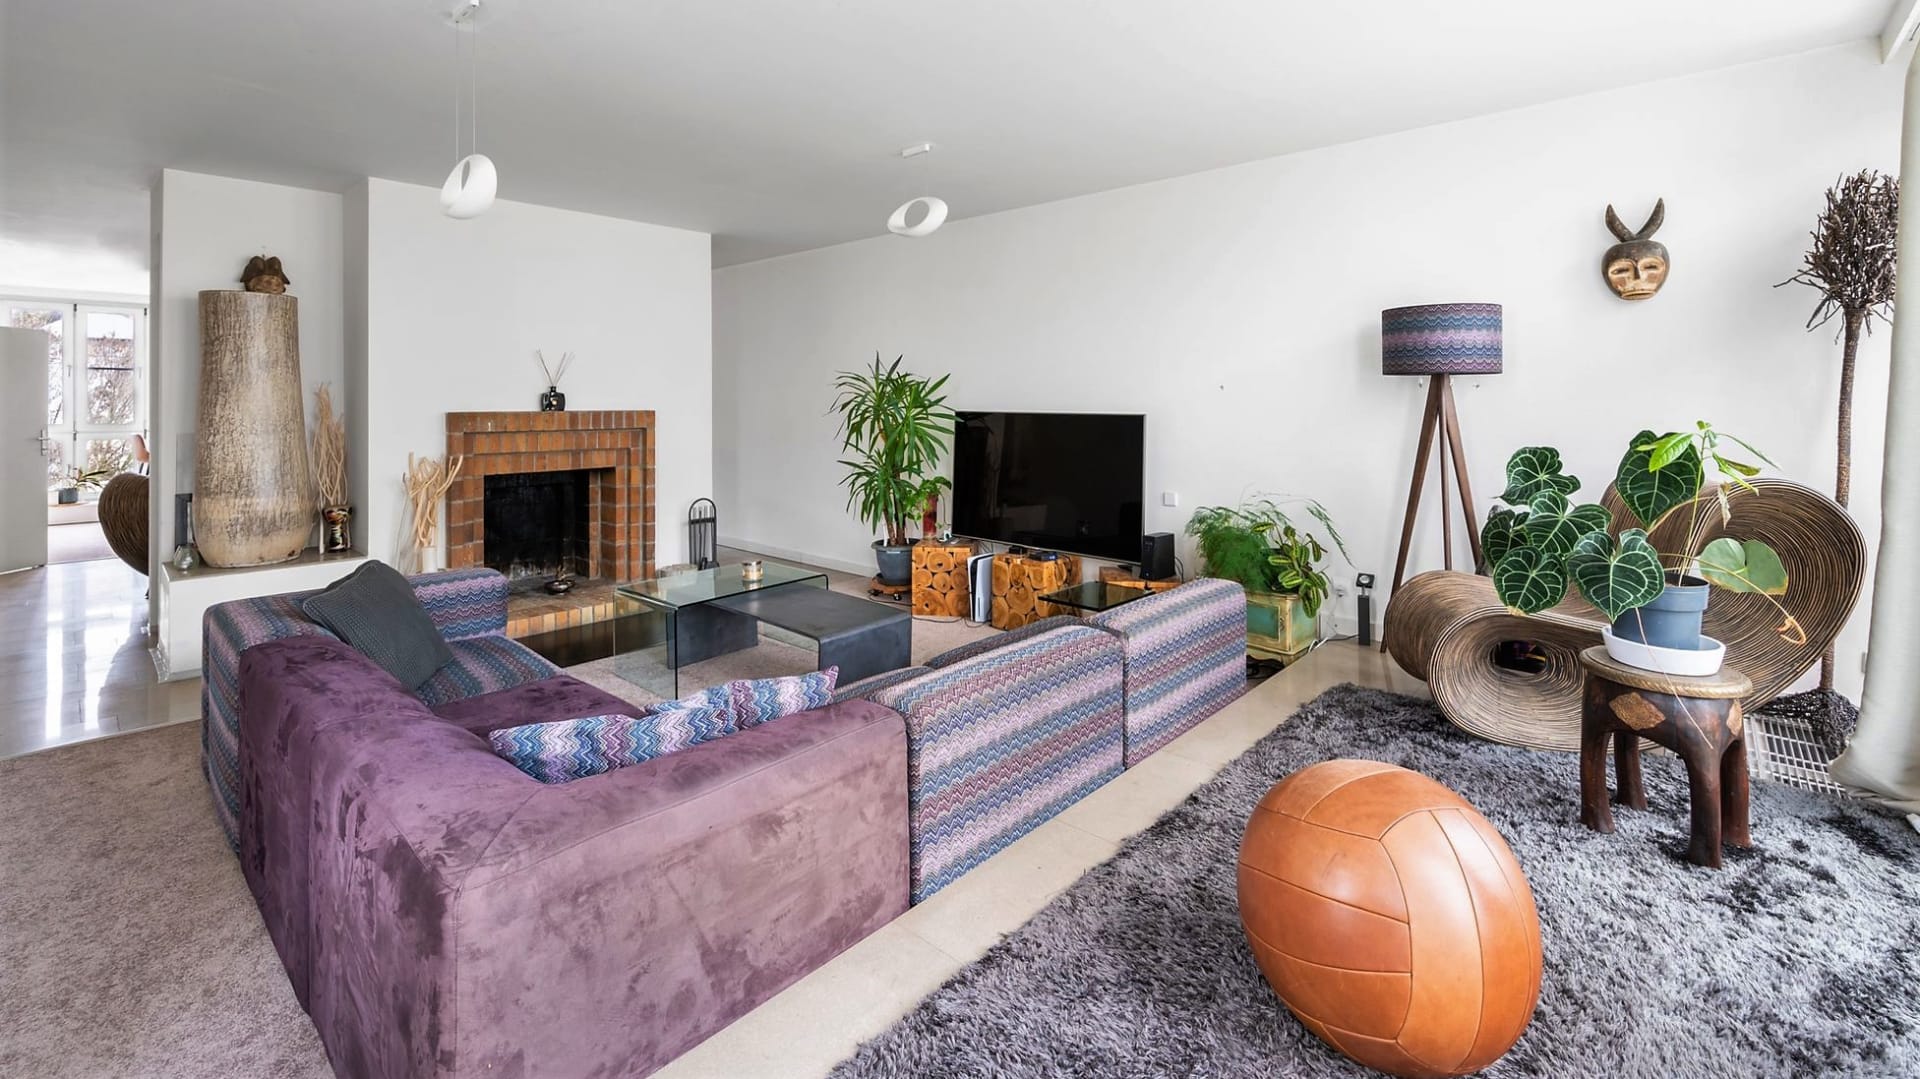 Dominantou prostorného bytu je obývací prostor s funkčním krbem a jídelnou.